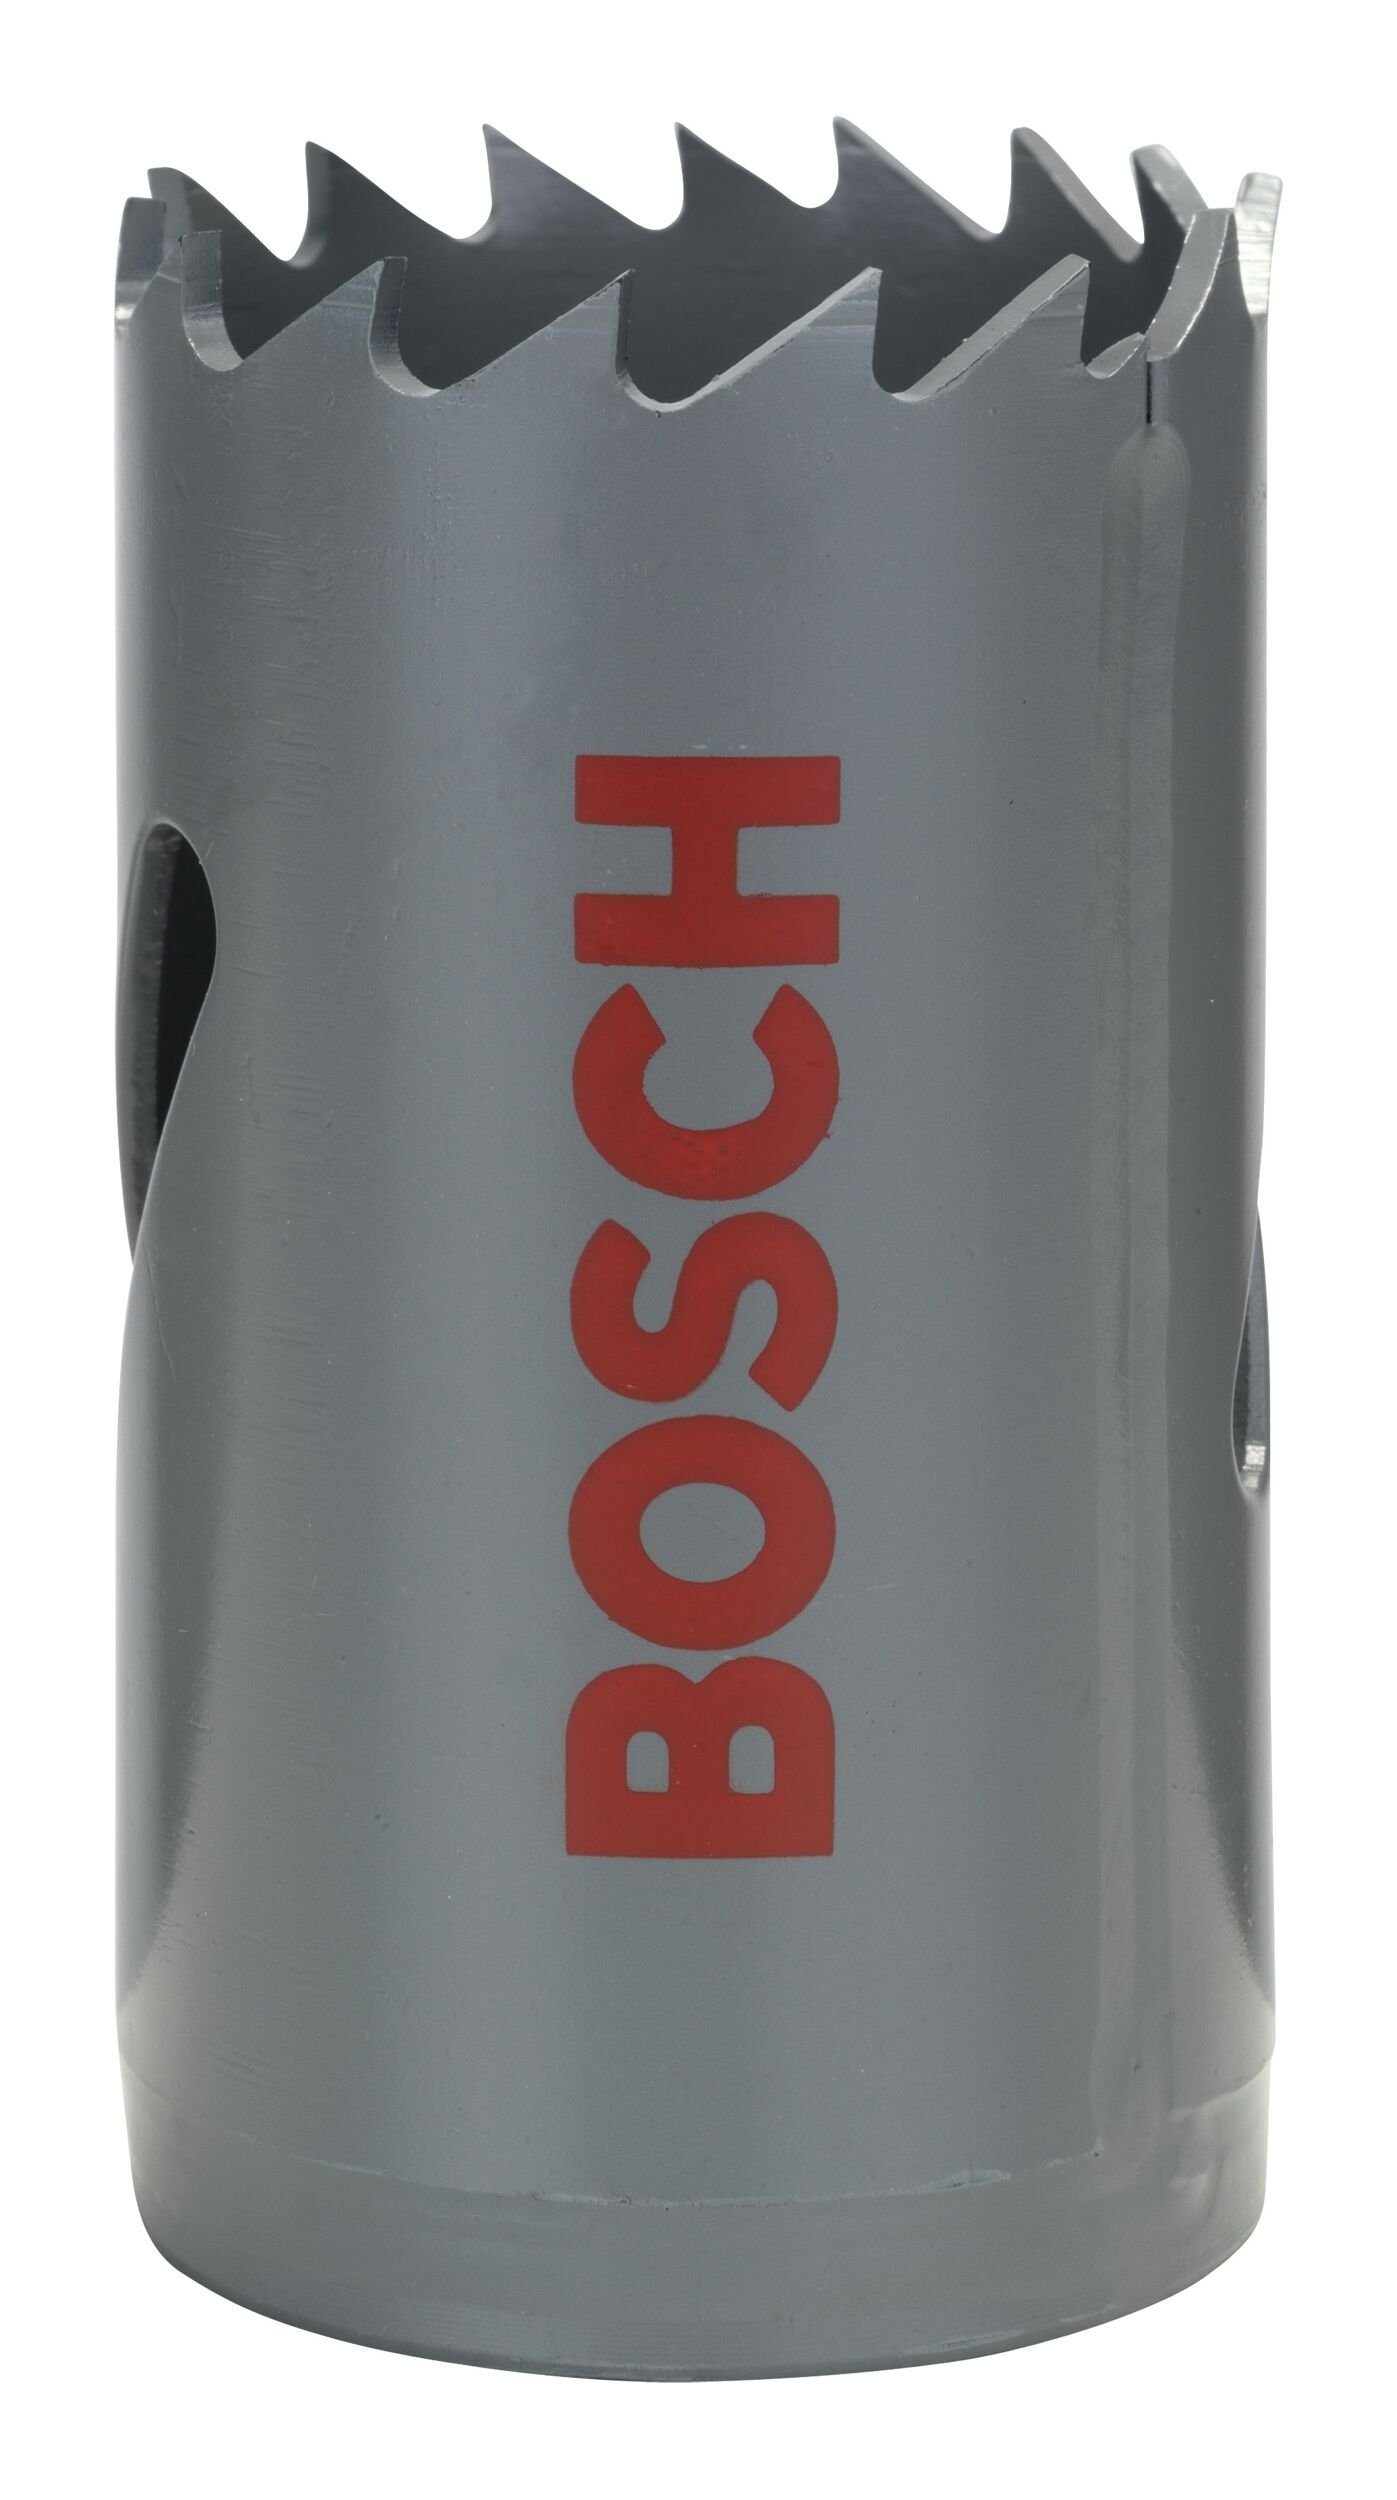 Bosch Accessories BOSCH - 30 mm, für Ø HSS-Bimetall 3/16" / Lochsäge, 1 Standardadapter